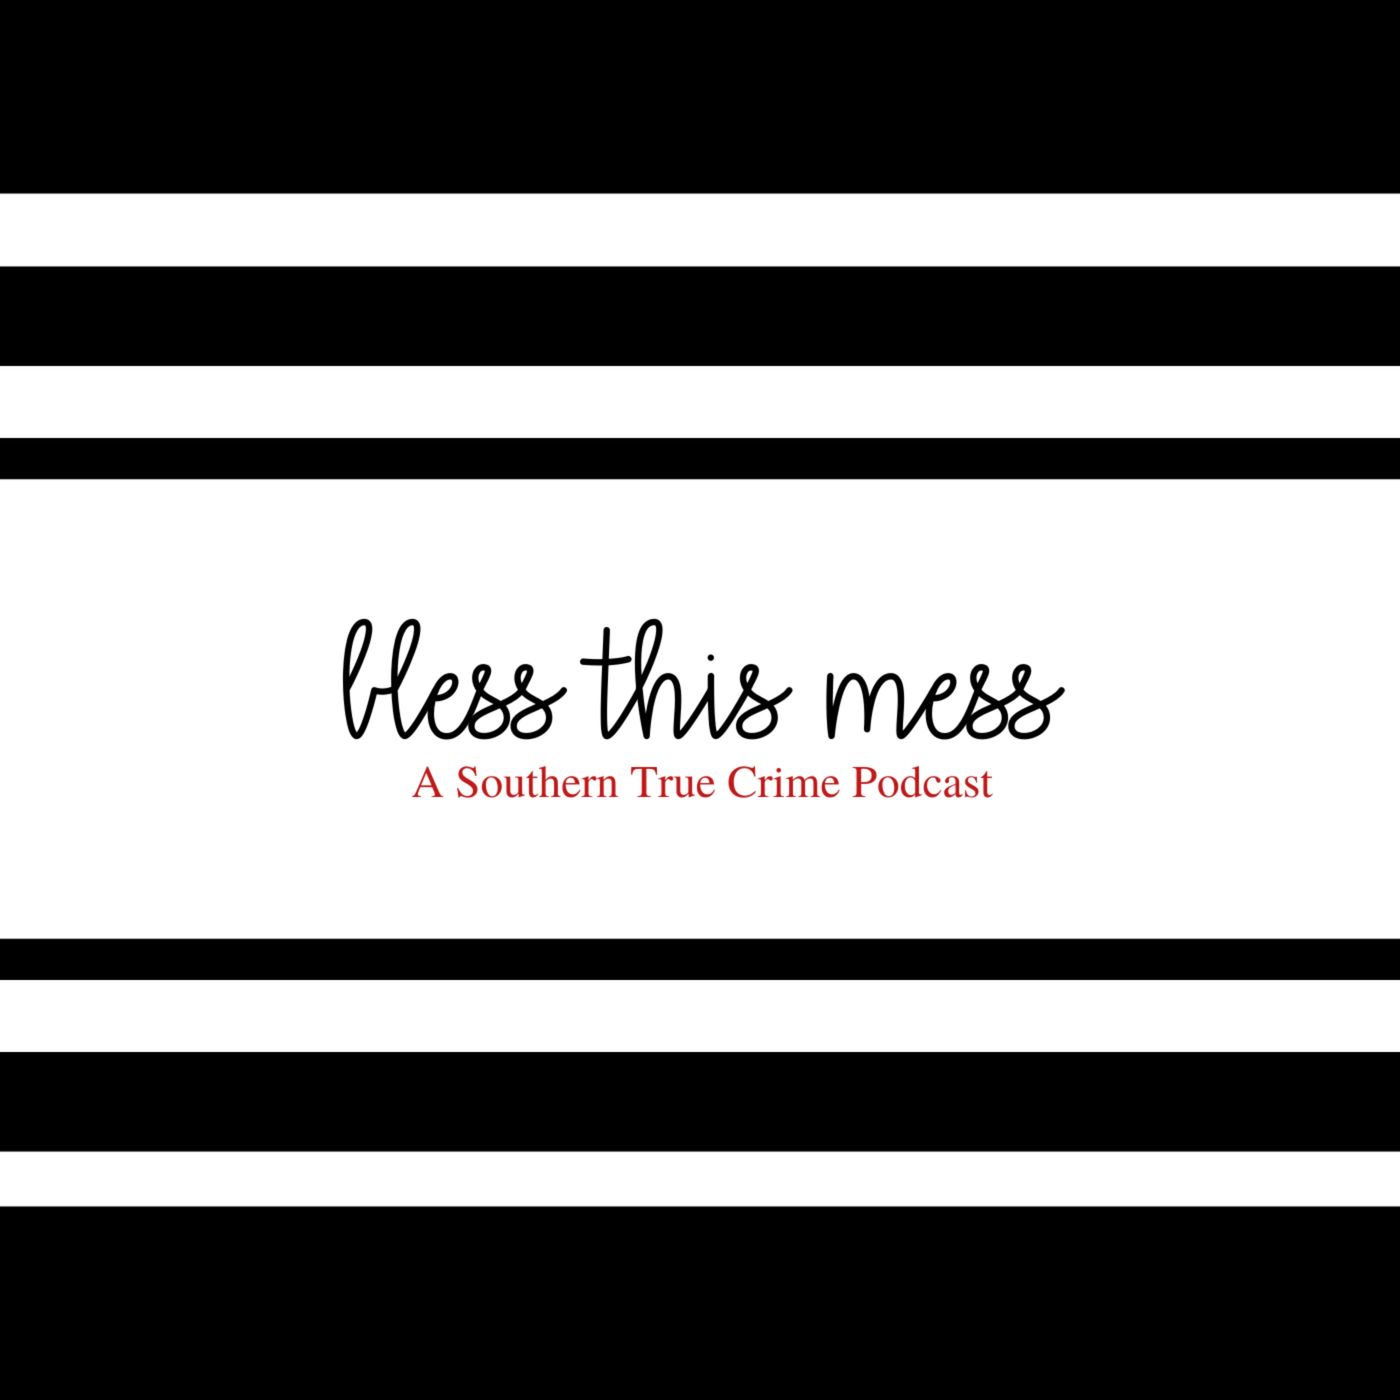 A Little Less Mess: [Kentucky] Michelle Mockbee